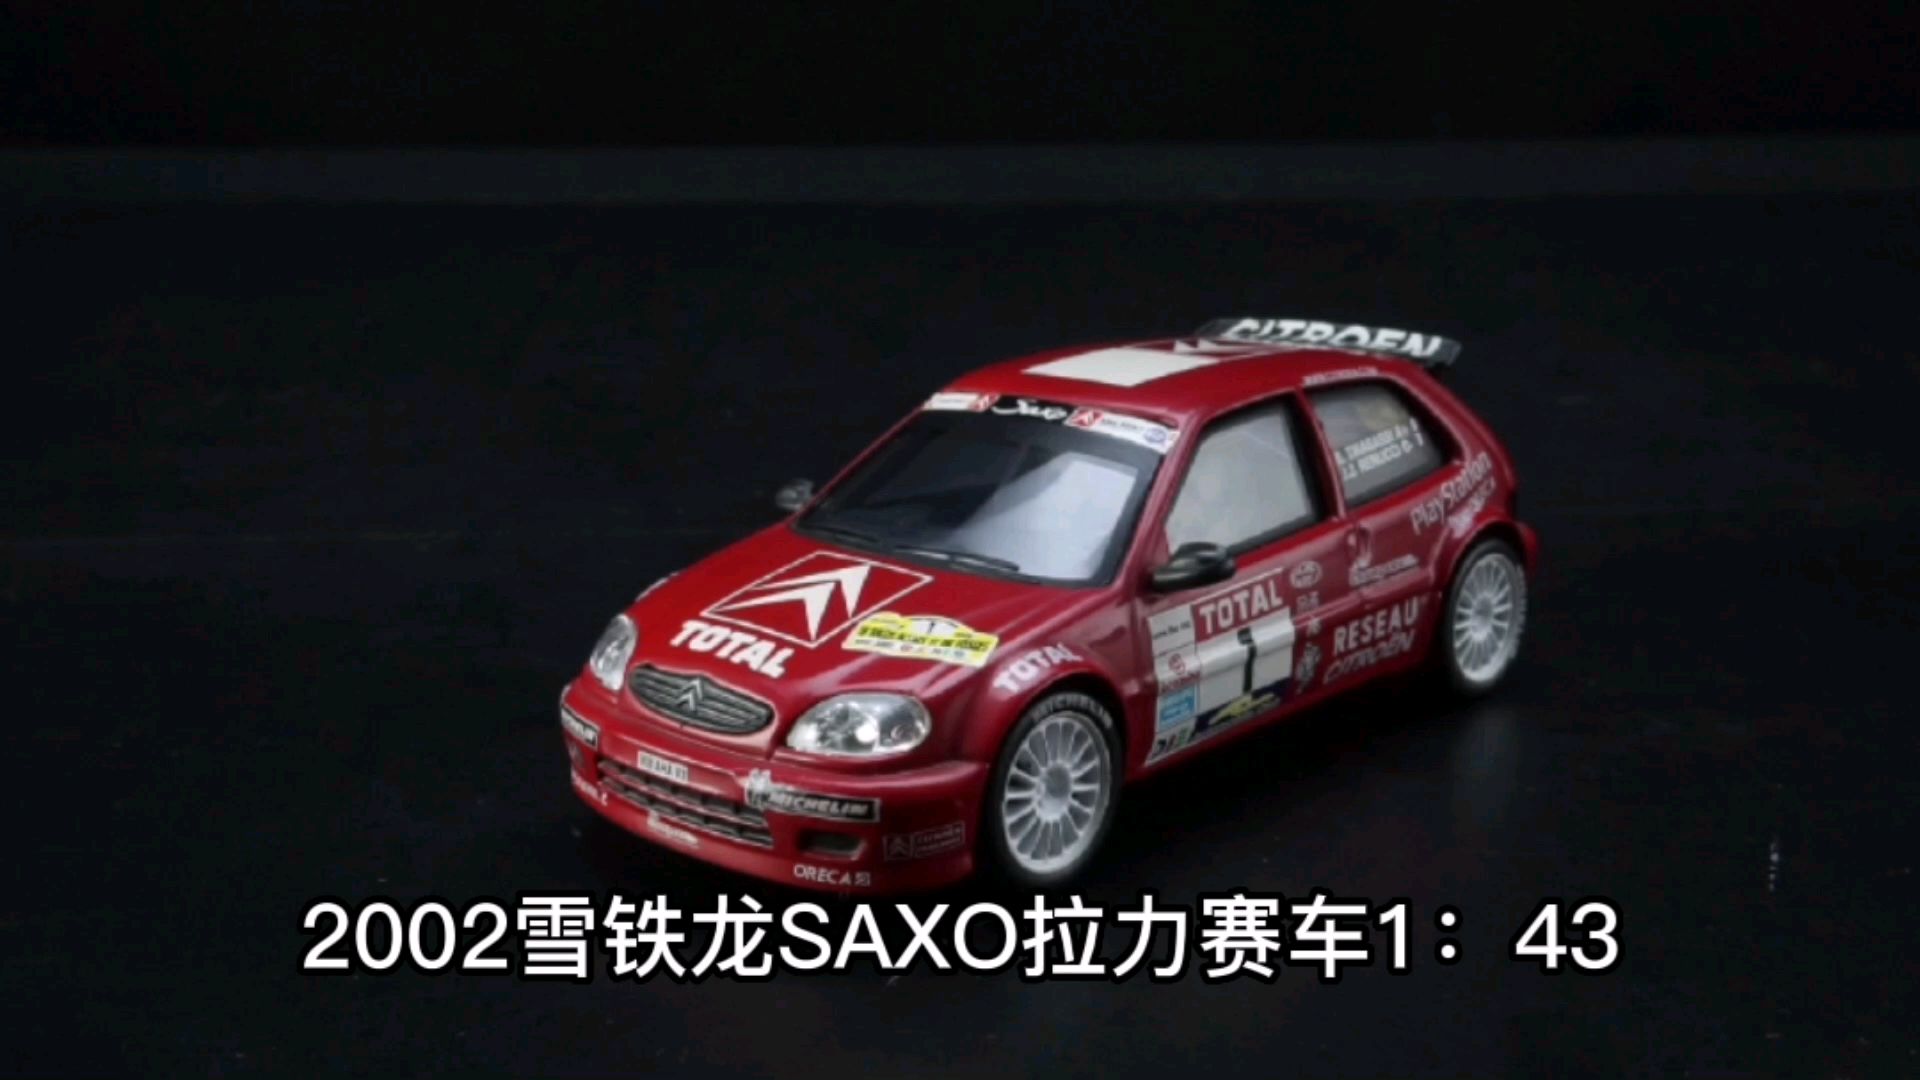 2002雪铁龙SAXO拉力赛车1：43，东晓汽车模型收藏馆藏品